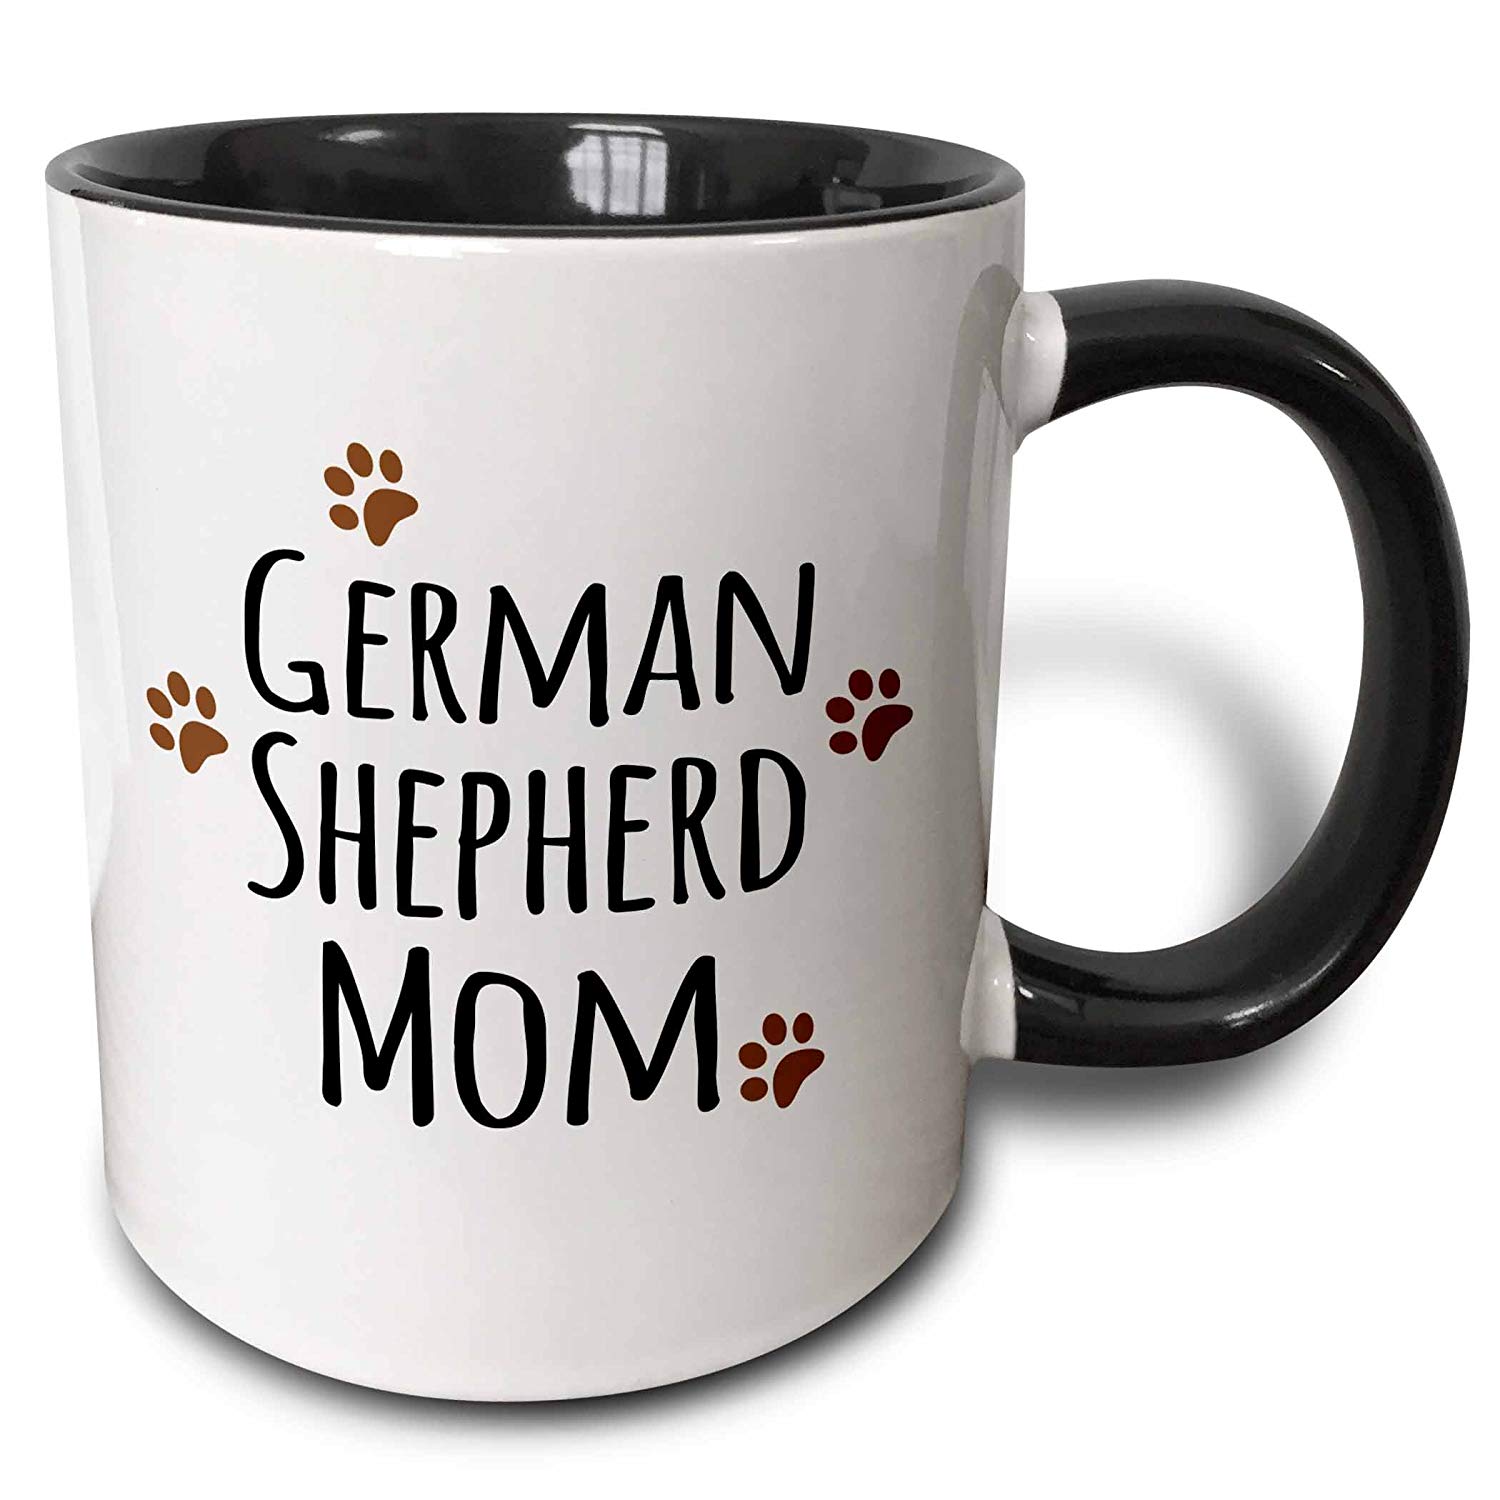 A mug with print that says - German Shepherd Mom